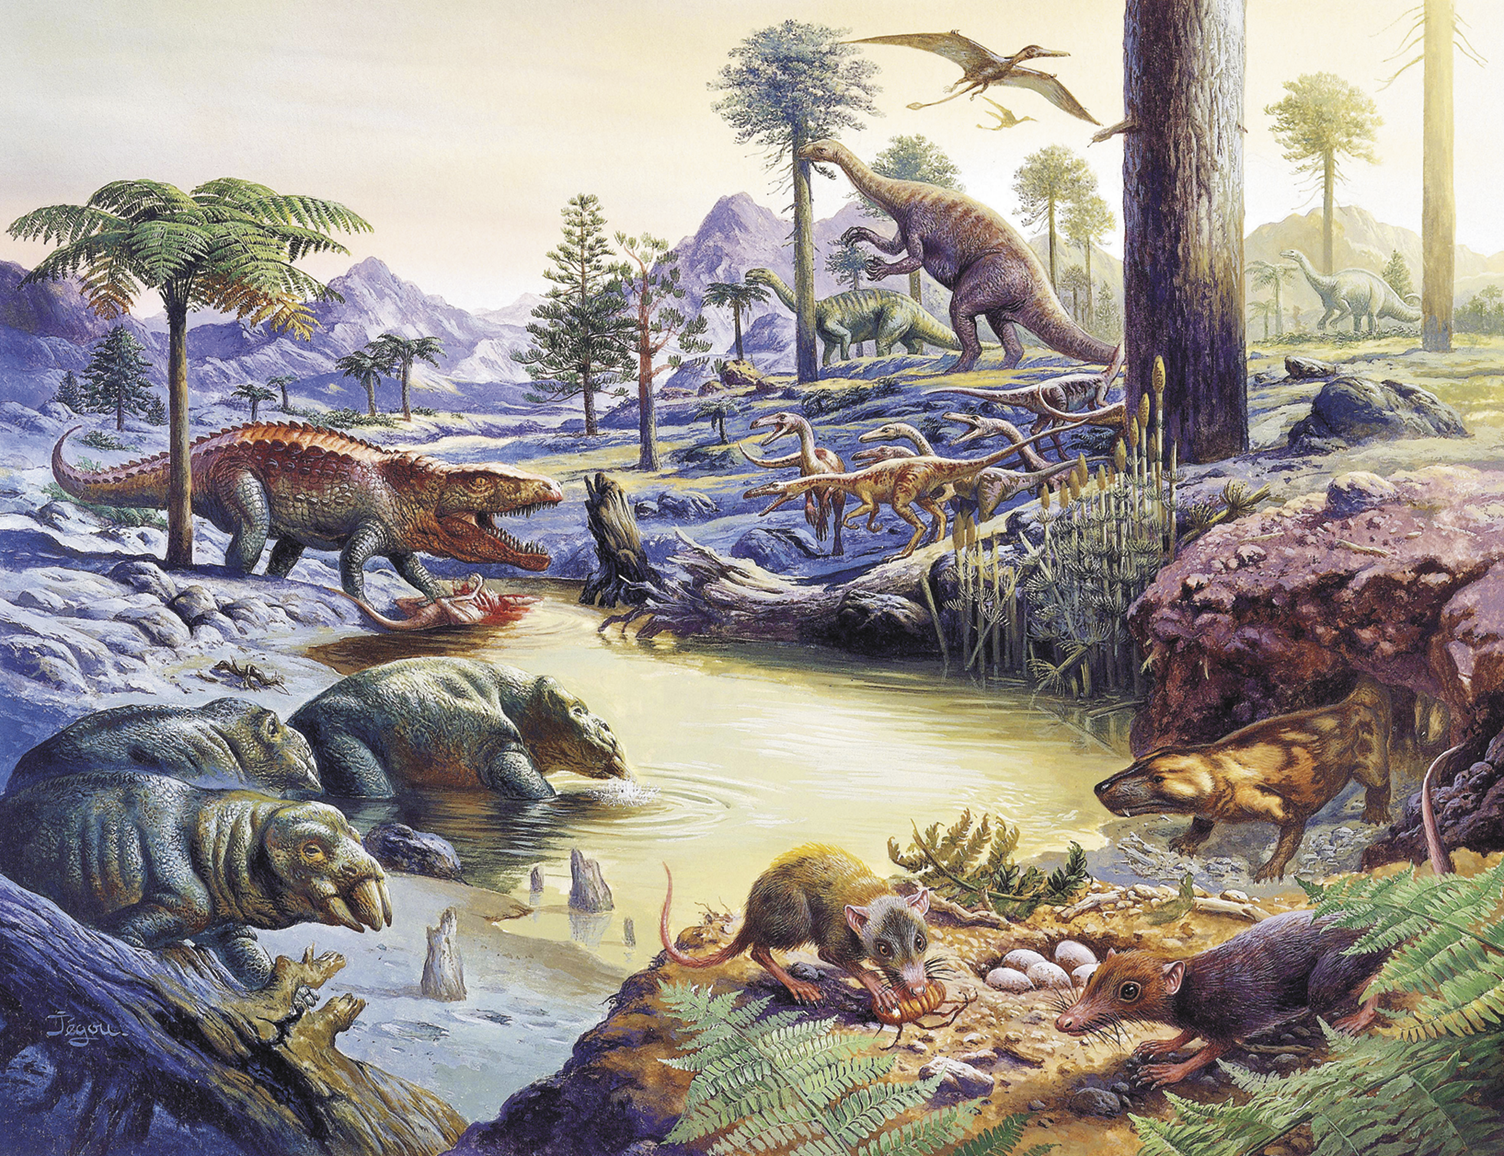 Ilustração. Dinossauros de diferentes espécies, reunidos nas margens de um rio. Alguns são altos e magros, outros são baixos e troncudos com presas grossas. Há animais semelhante a ratos próximo a um ninho com ovos e outro semelhante a um crocodilo. Ao redor há muitas árvores e ao fundo, montanhas.